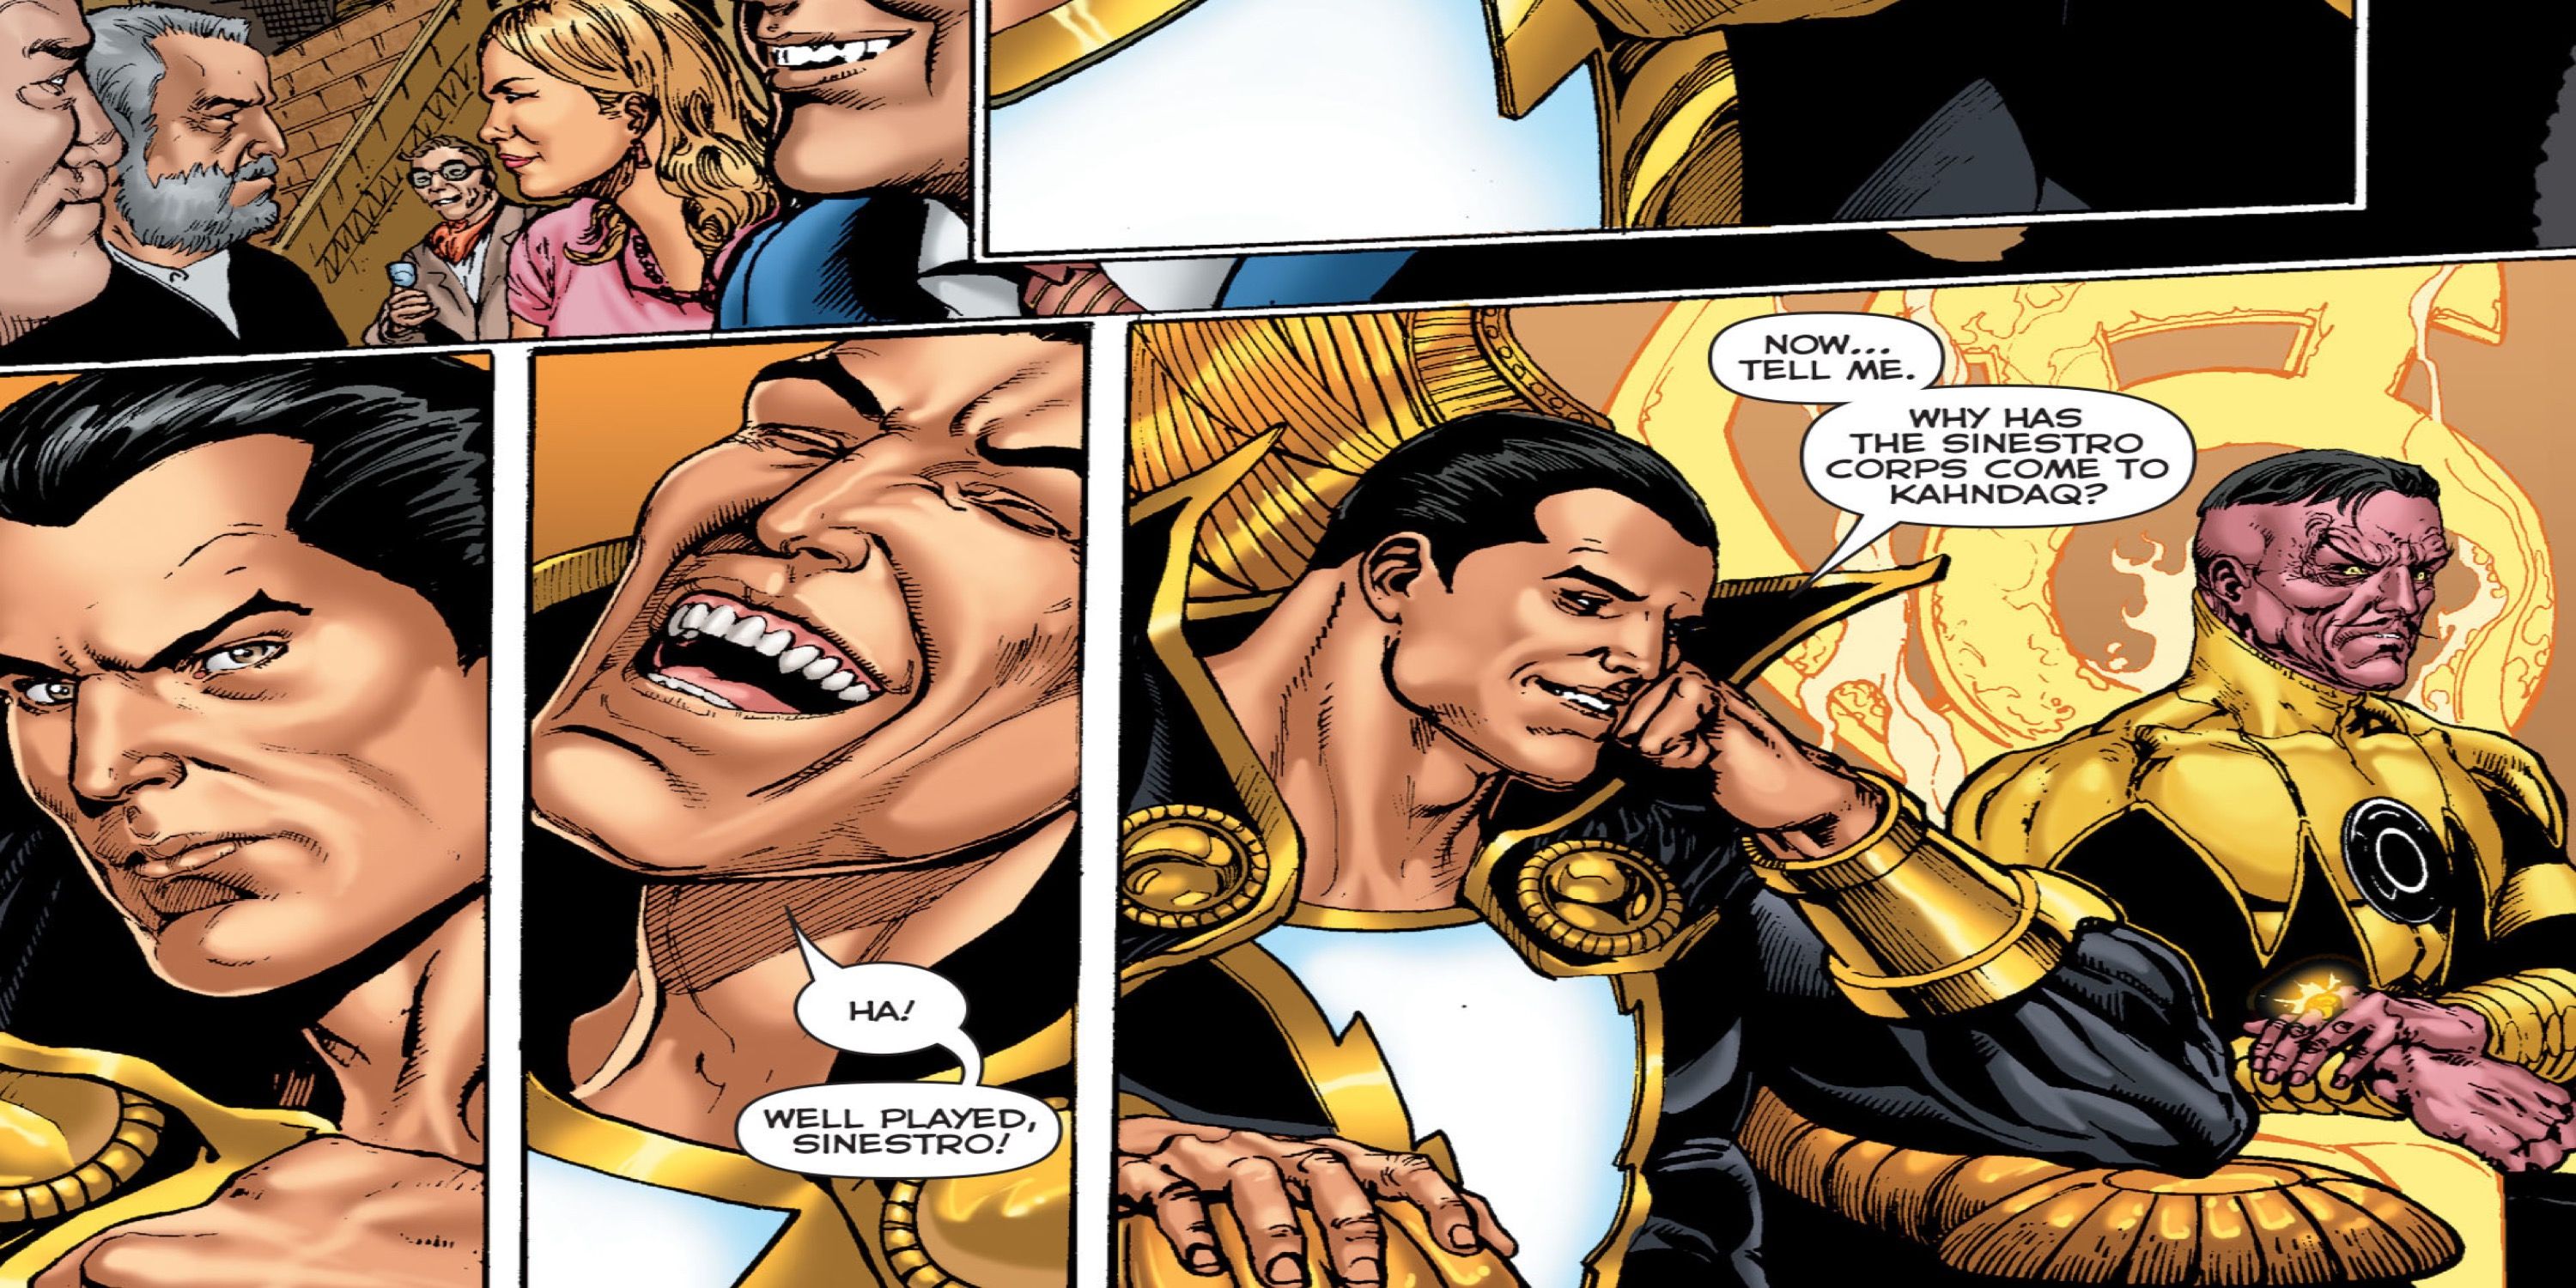 Sinestro and Black Adam